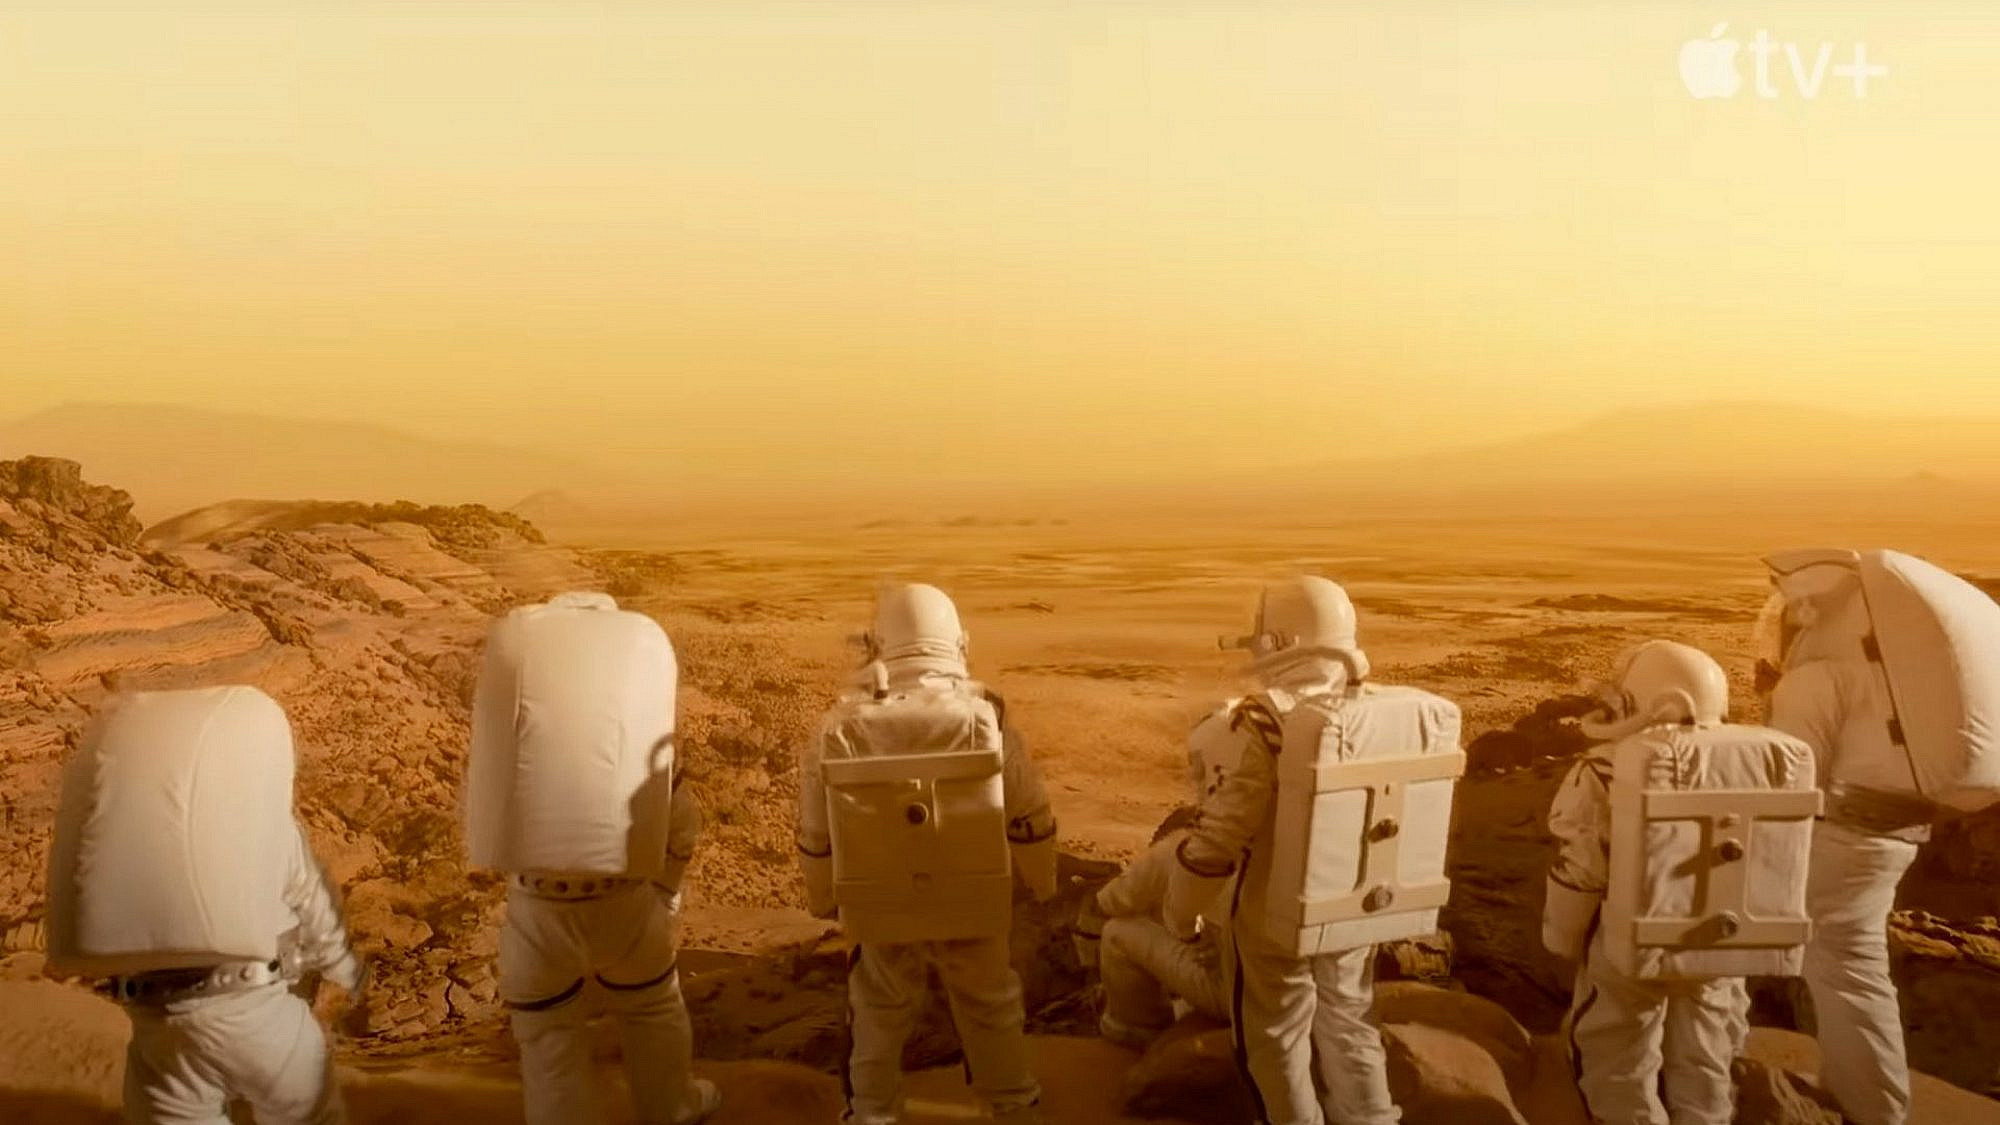 ואז, ב-1995, הגענו למאדים. "עבור כל האנושות" (צילום: יחסי ציבור)